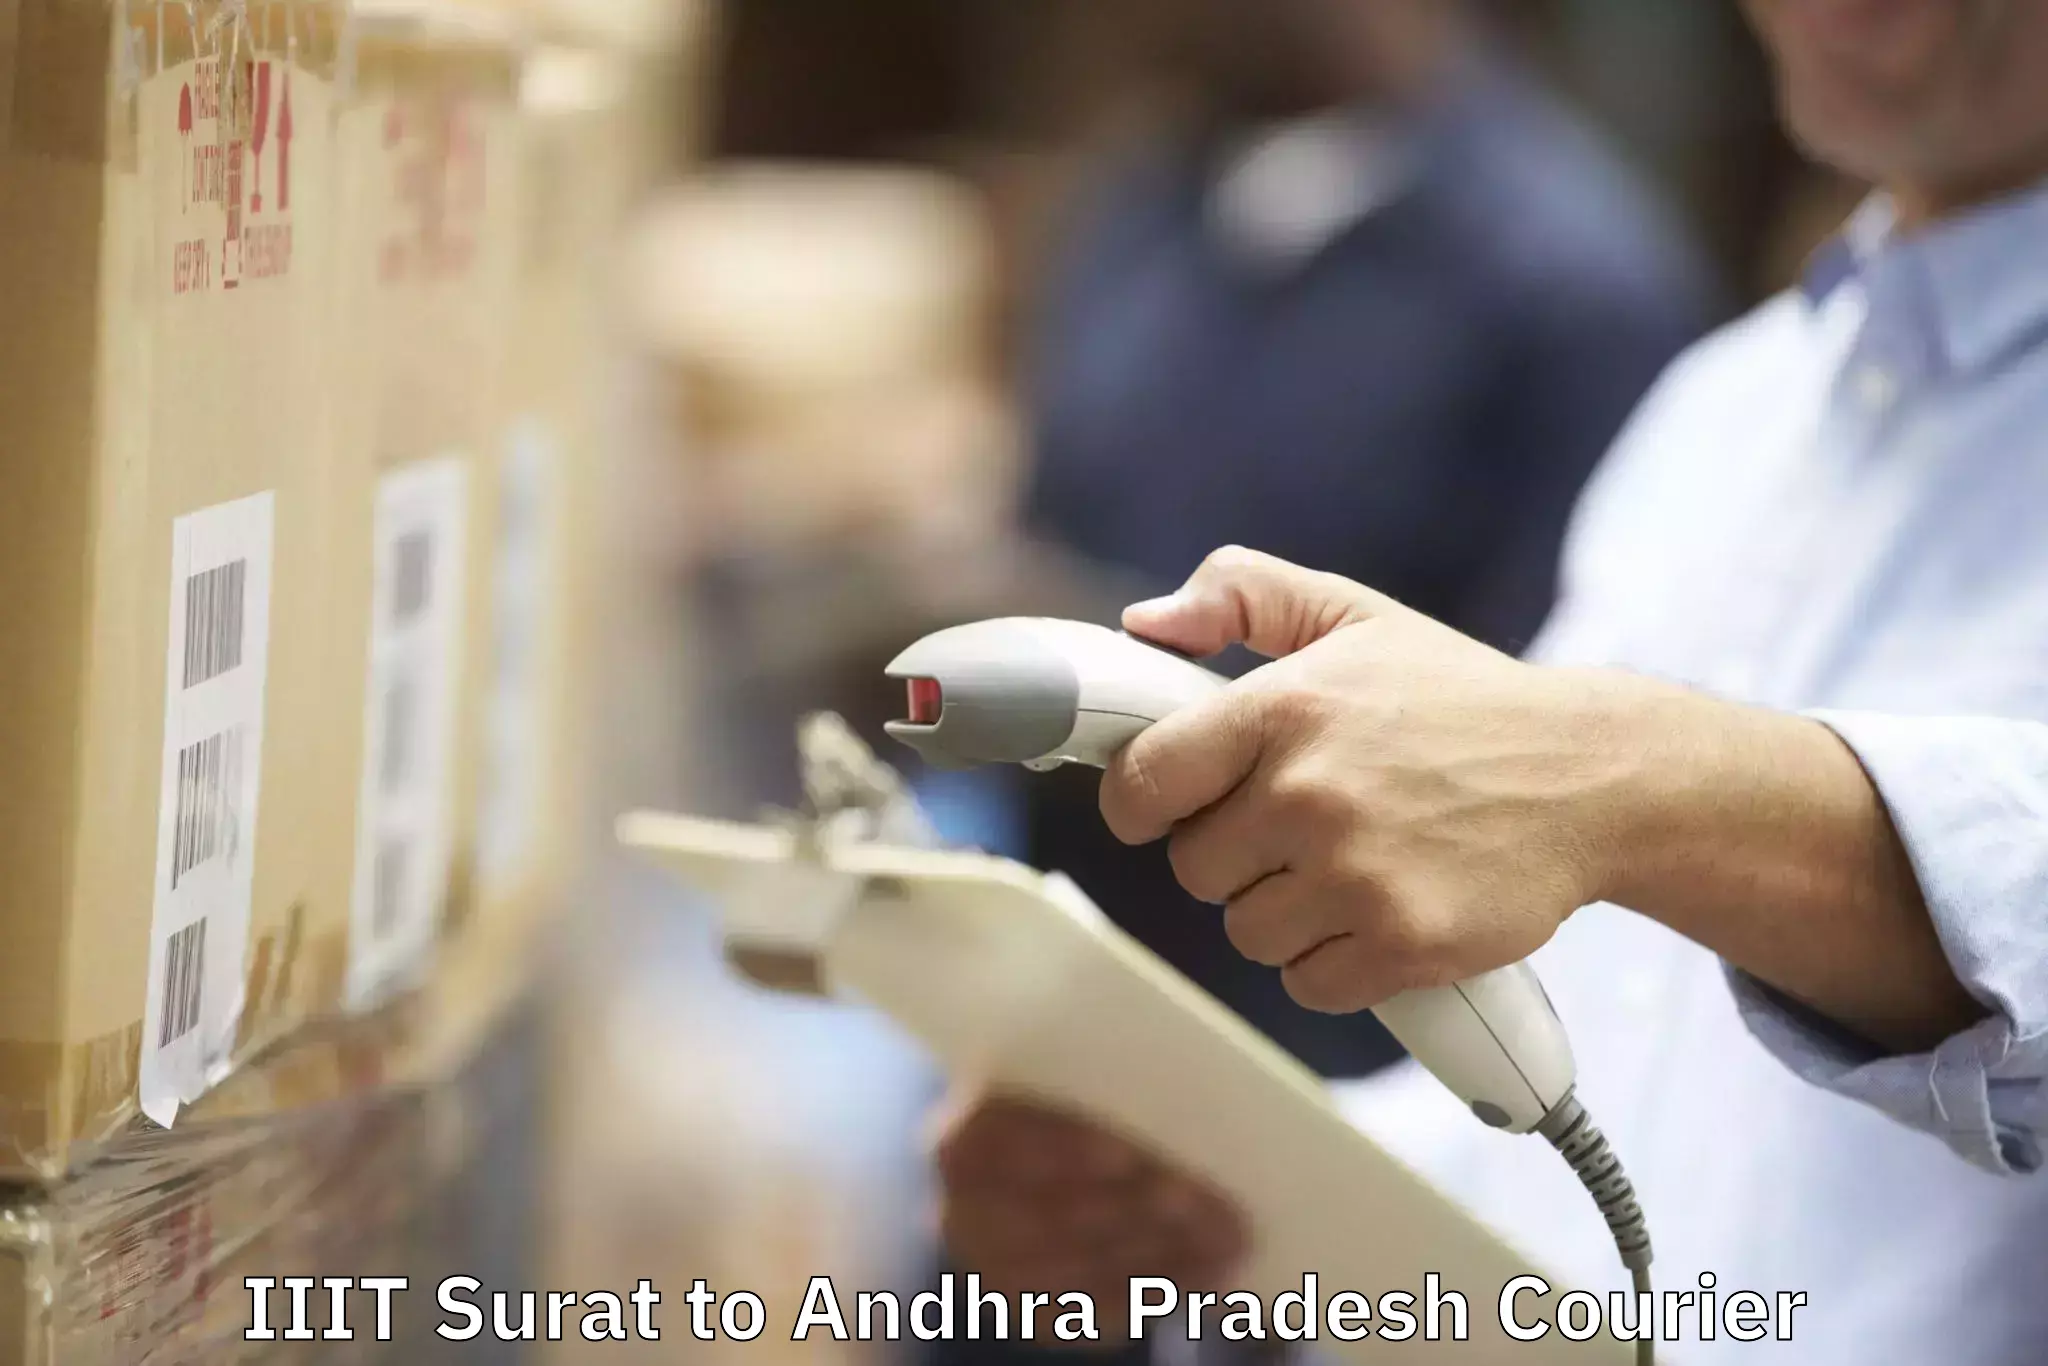 Furniture transport experts IIIT Surat to Andhra Pradesh